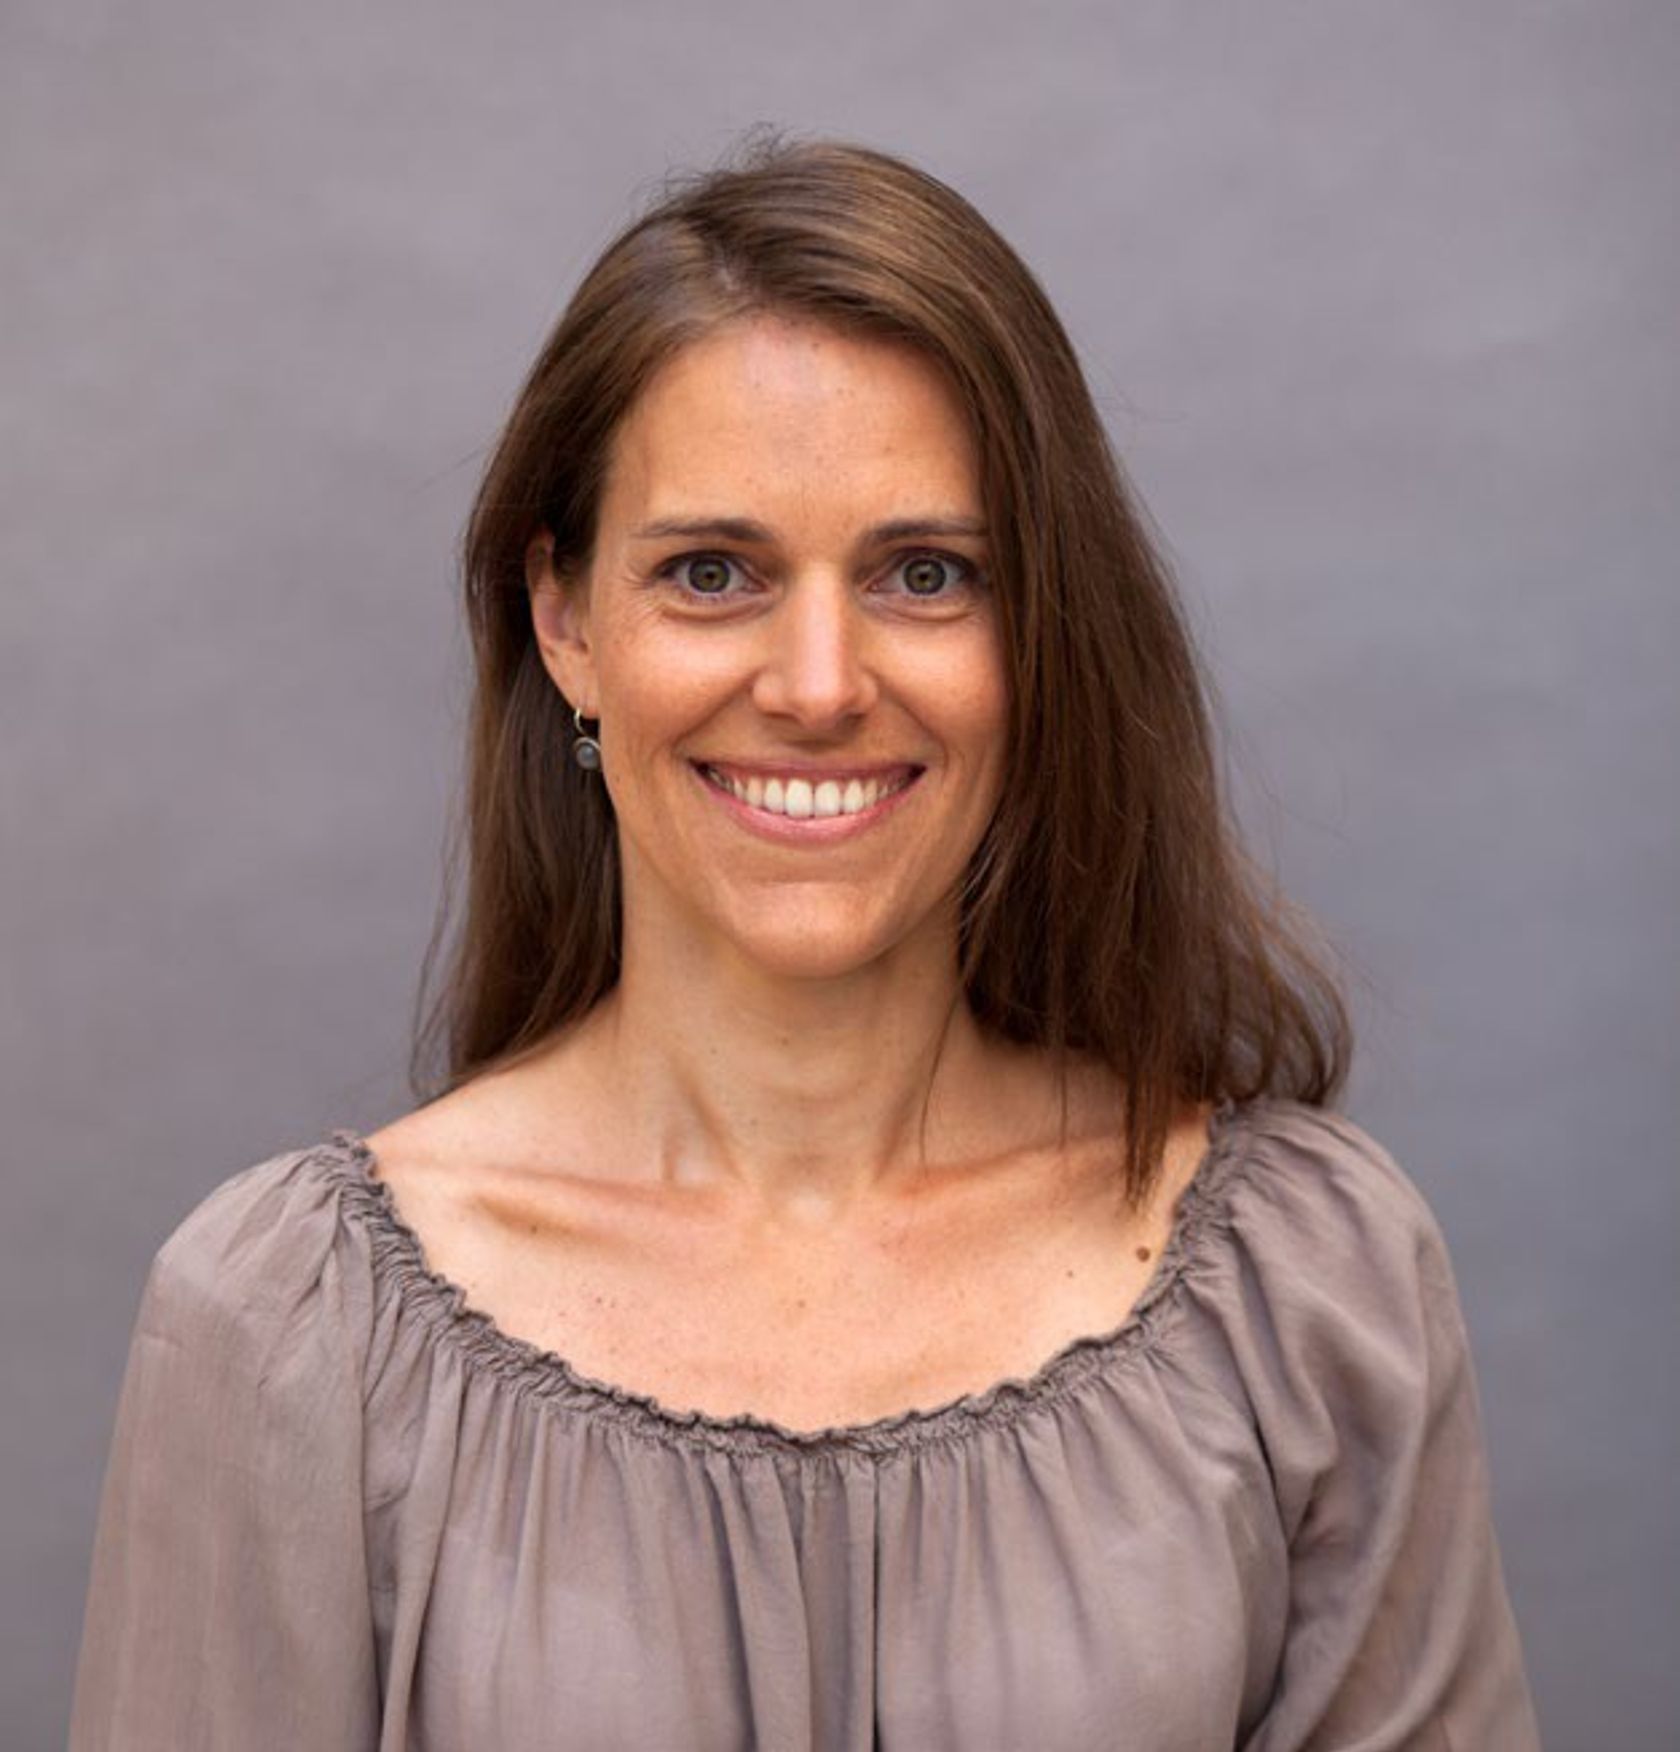 Dr. Mareike Pöllmann, Pränatalmedizinerin aus München, Mitglied des Fachbeirats der GynDepesche.